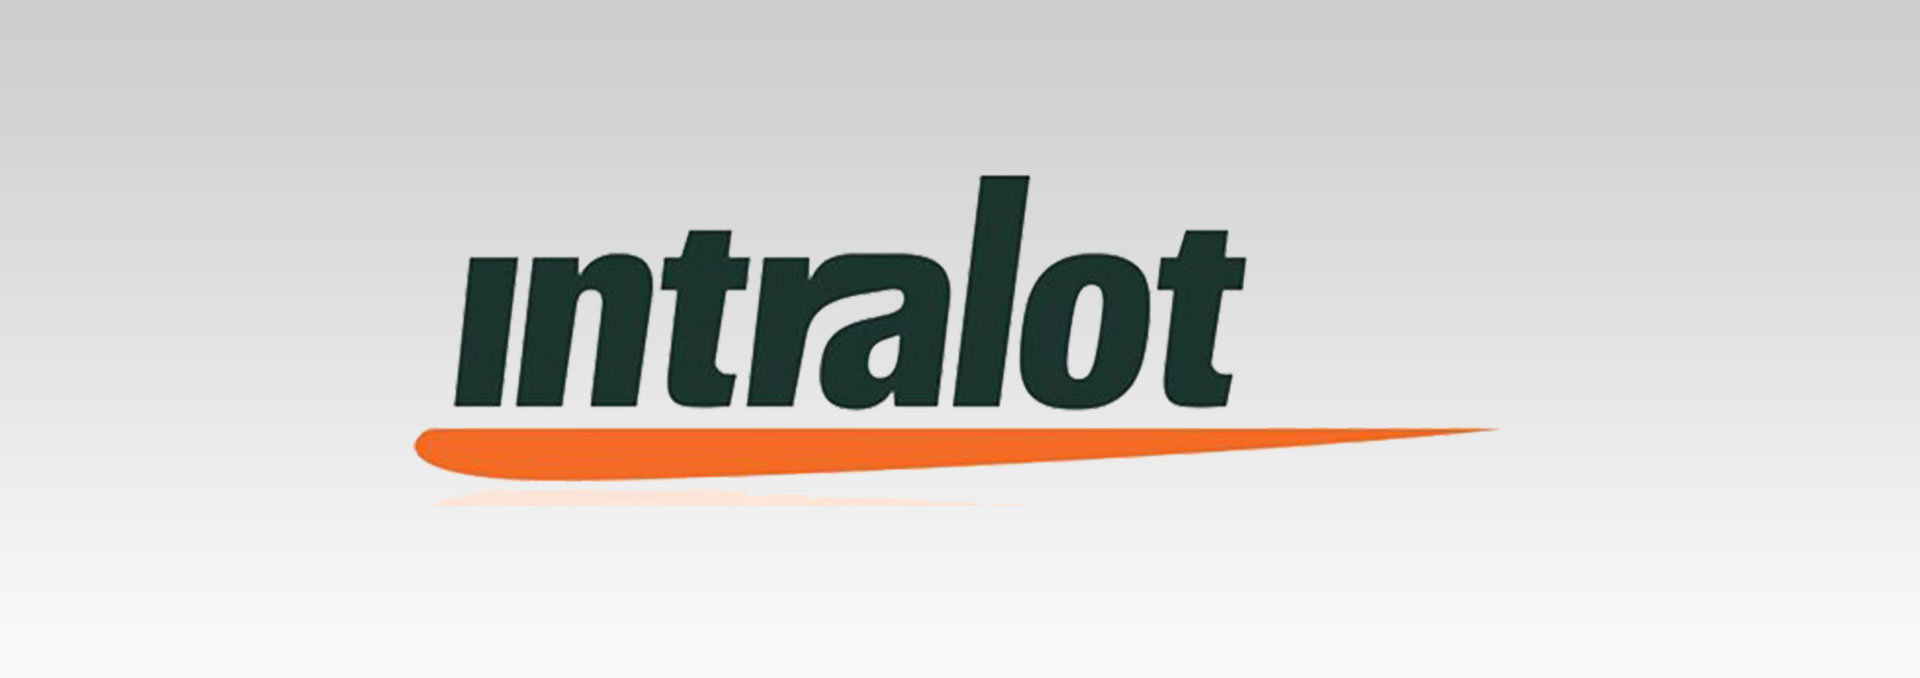 Intralot: Καλύφθηκε πλήρως η Αύξηση Μετοχικού Κεφαλαίου